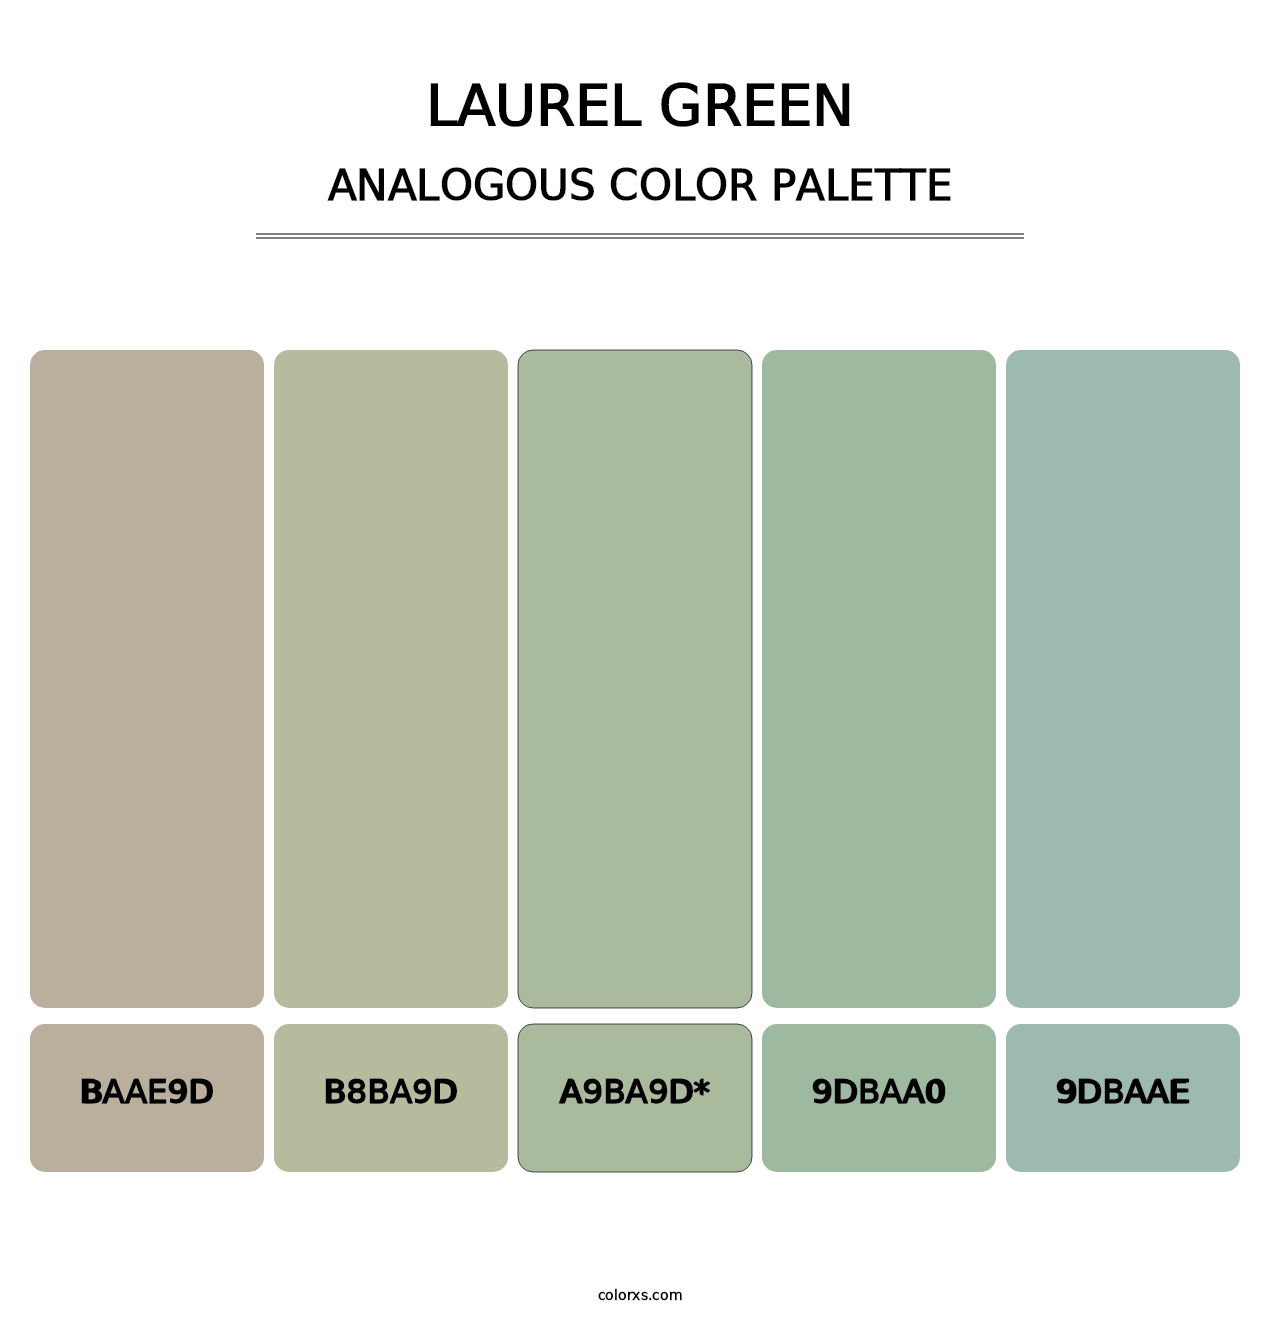 Laurel Green - Analogous Color Palette